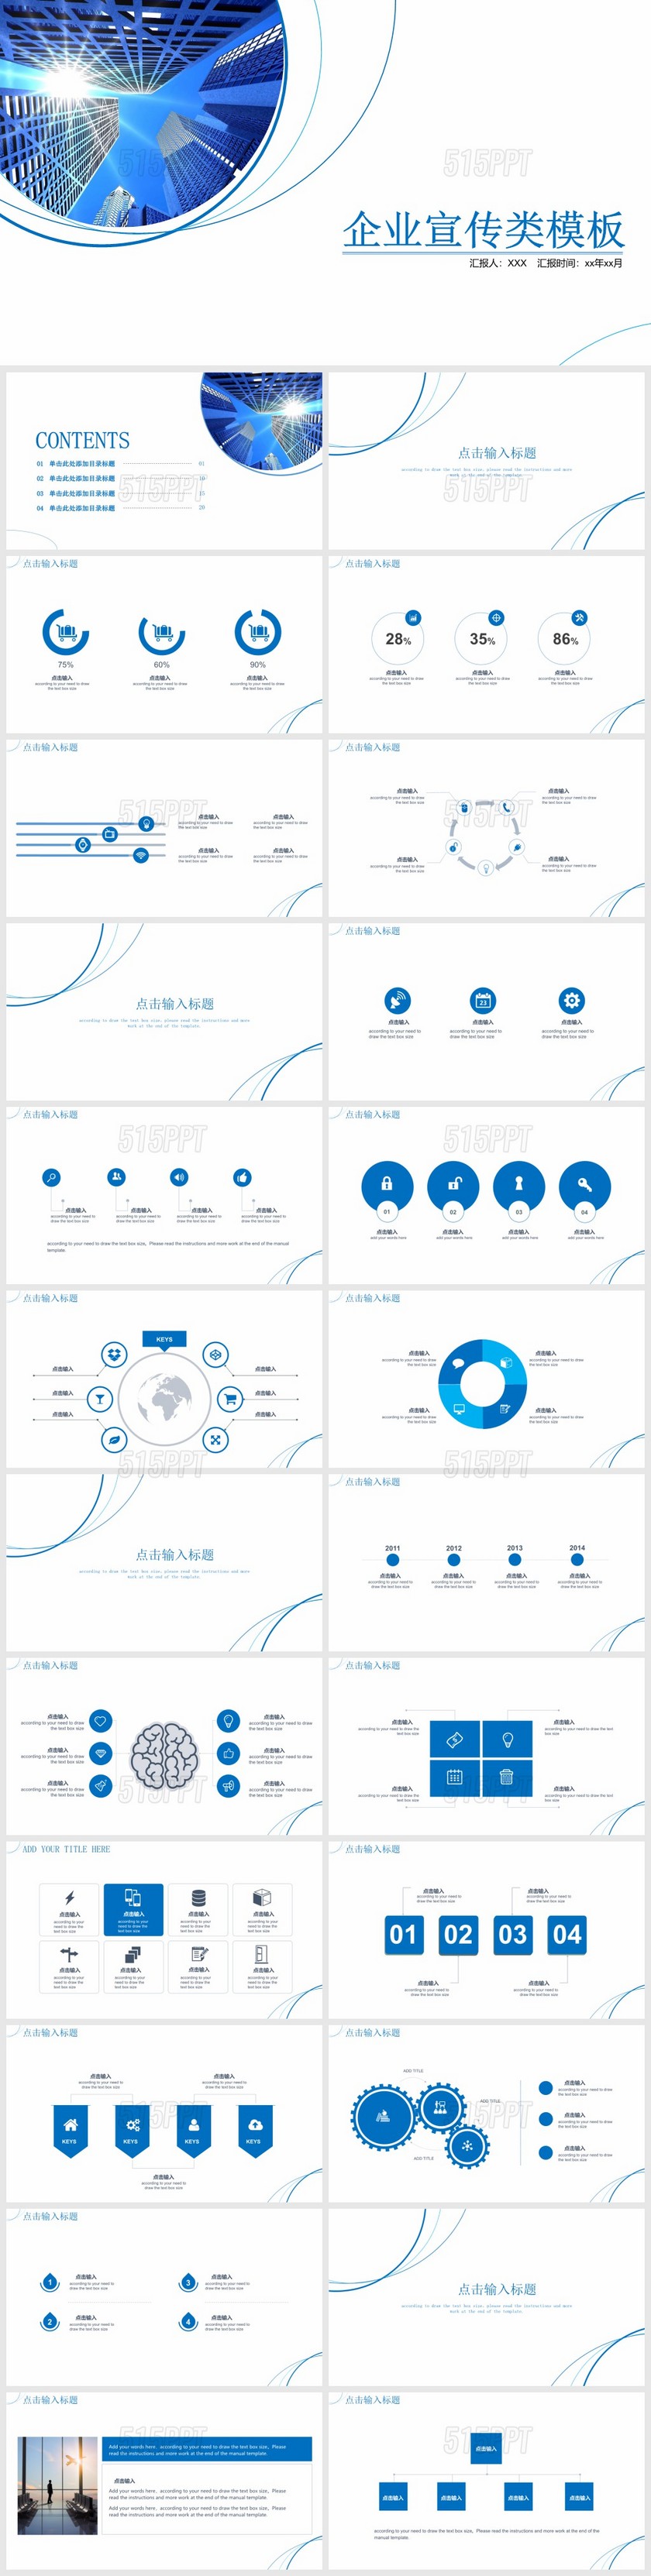 蓝色简洁公司介绍企业宣传类项目介绍PPT模板